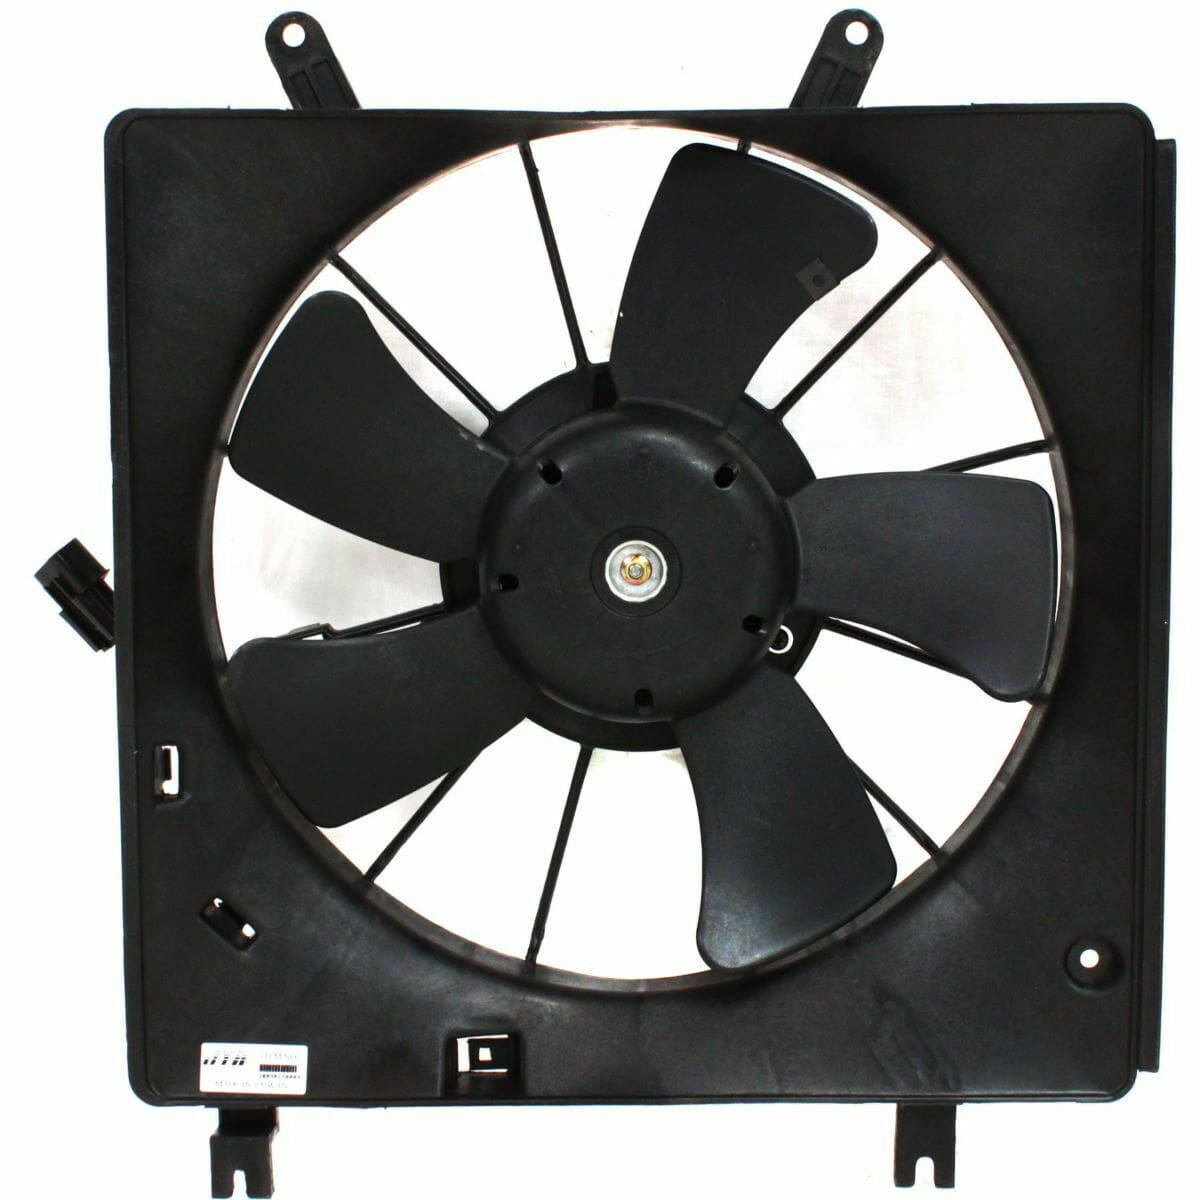 MI3115102 Cooling System Fan Radiator Assembly